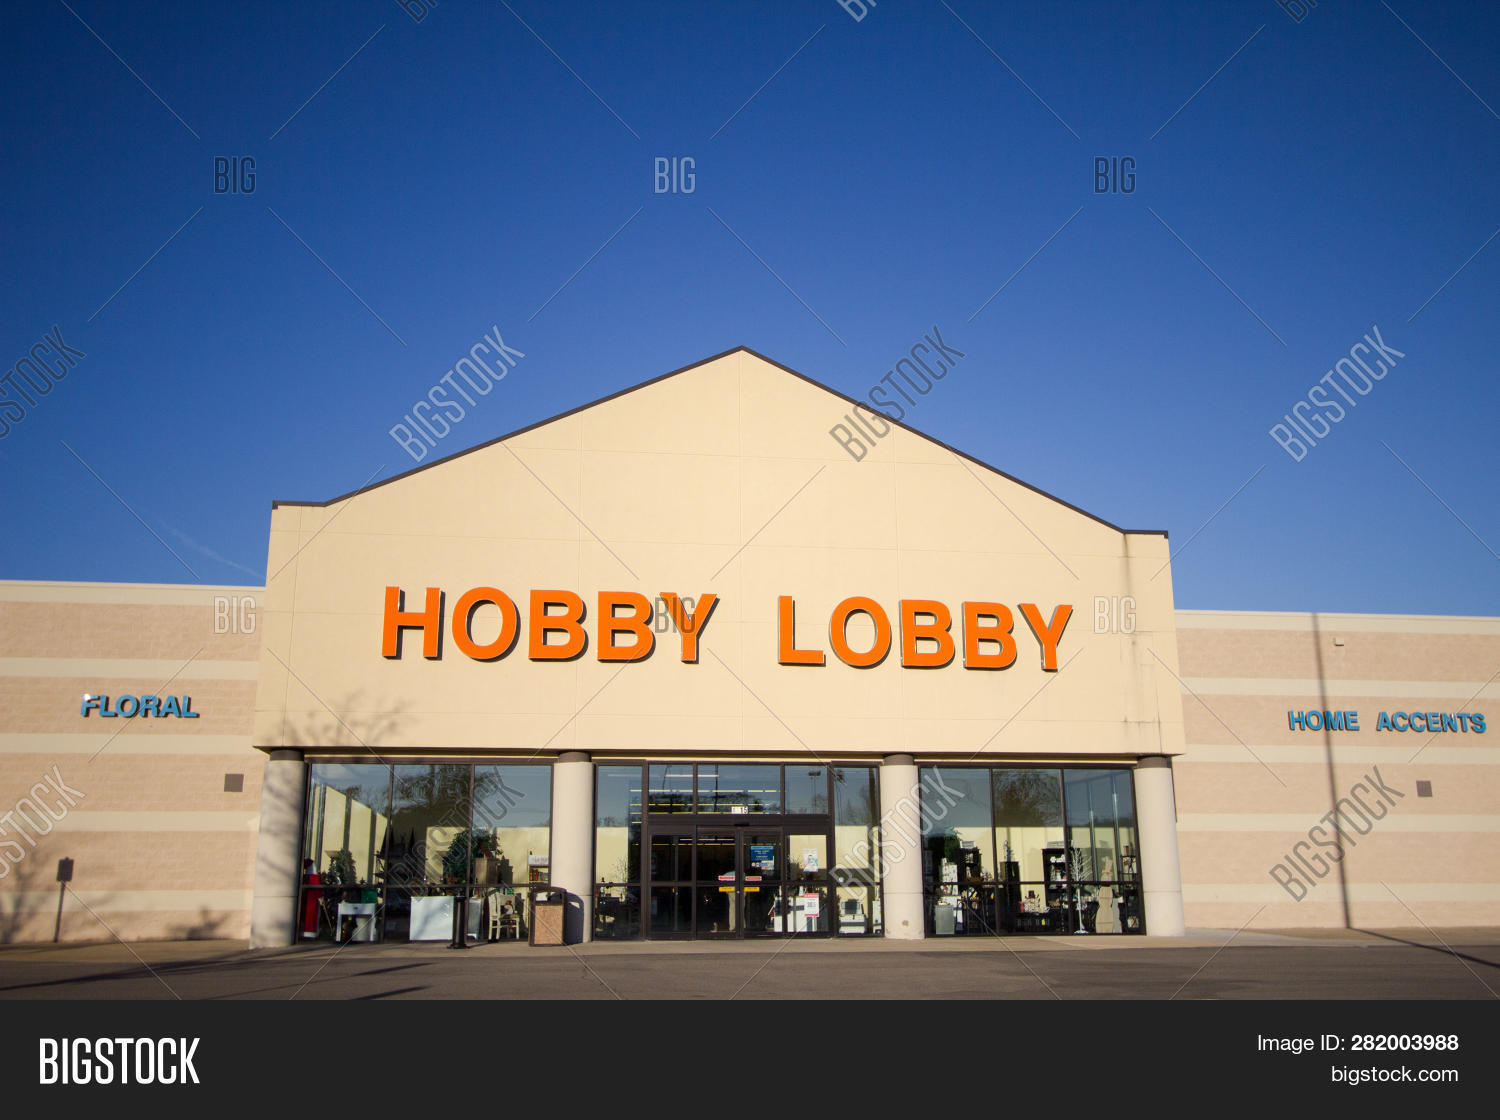 hobby lobby in port huron michigan